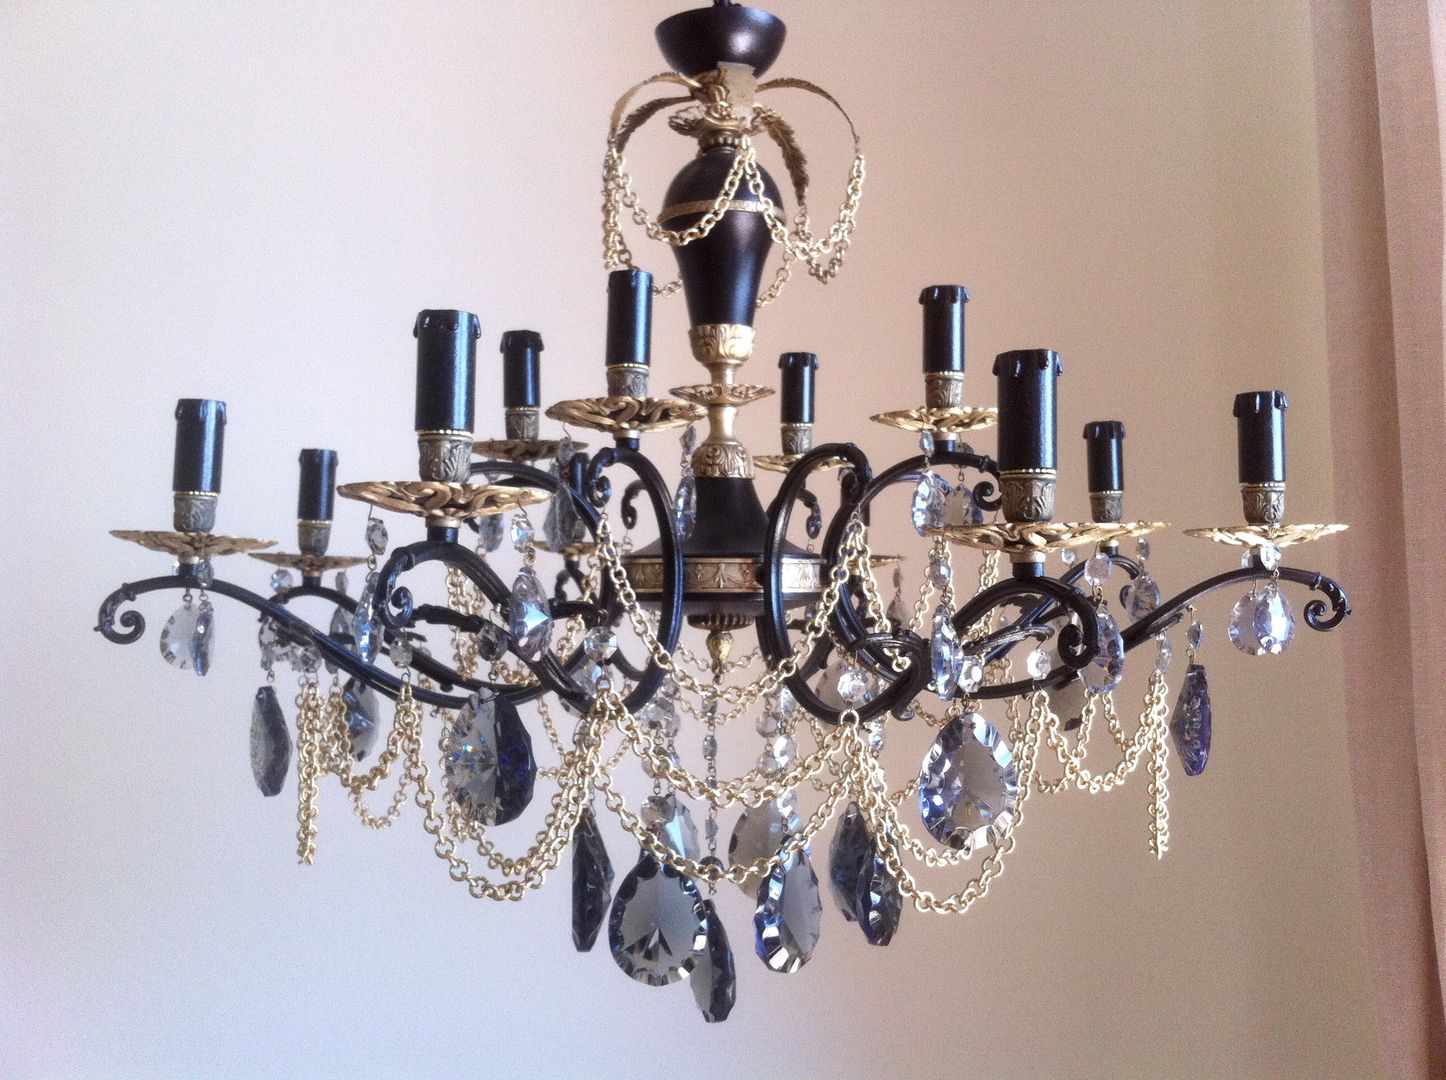 Black and bronze vintage repurposed chandelier, 12 lights, Milan Chic Chandeliers Milan Chic Chandeliers オリジナルデザインの リビング 照明